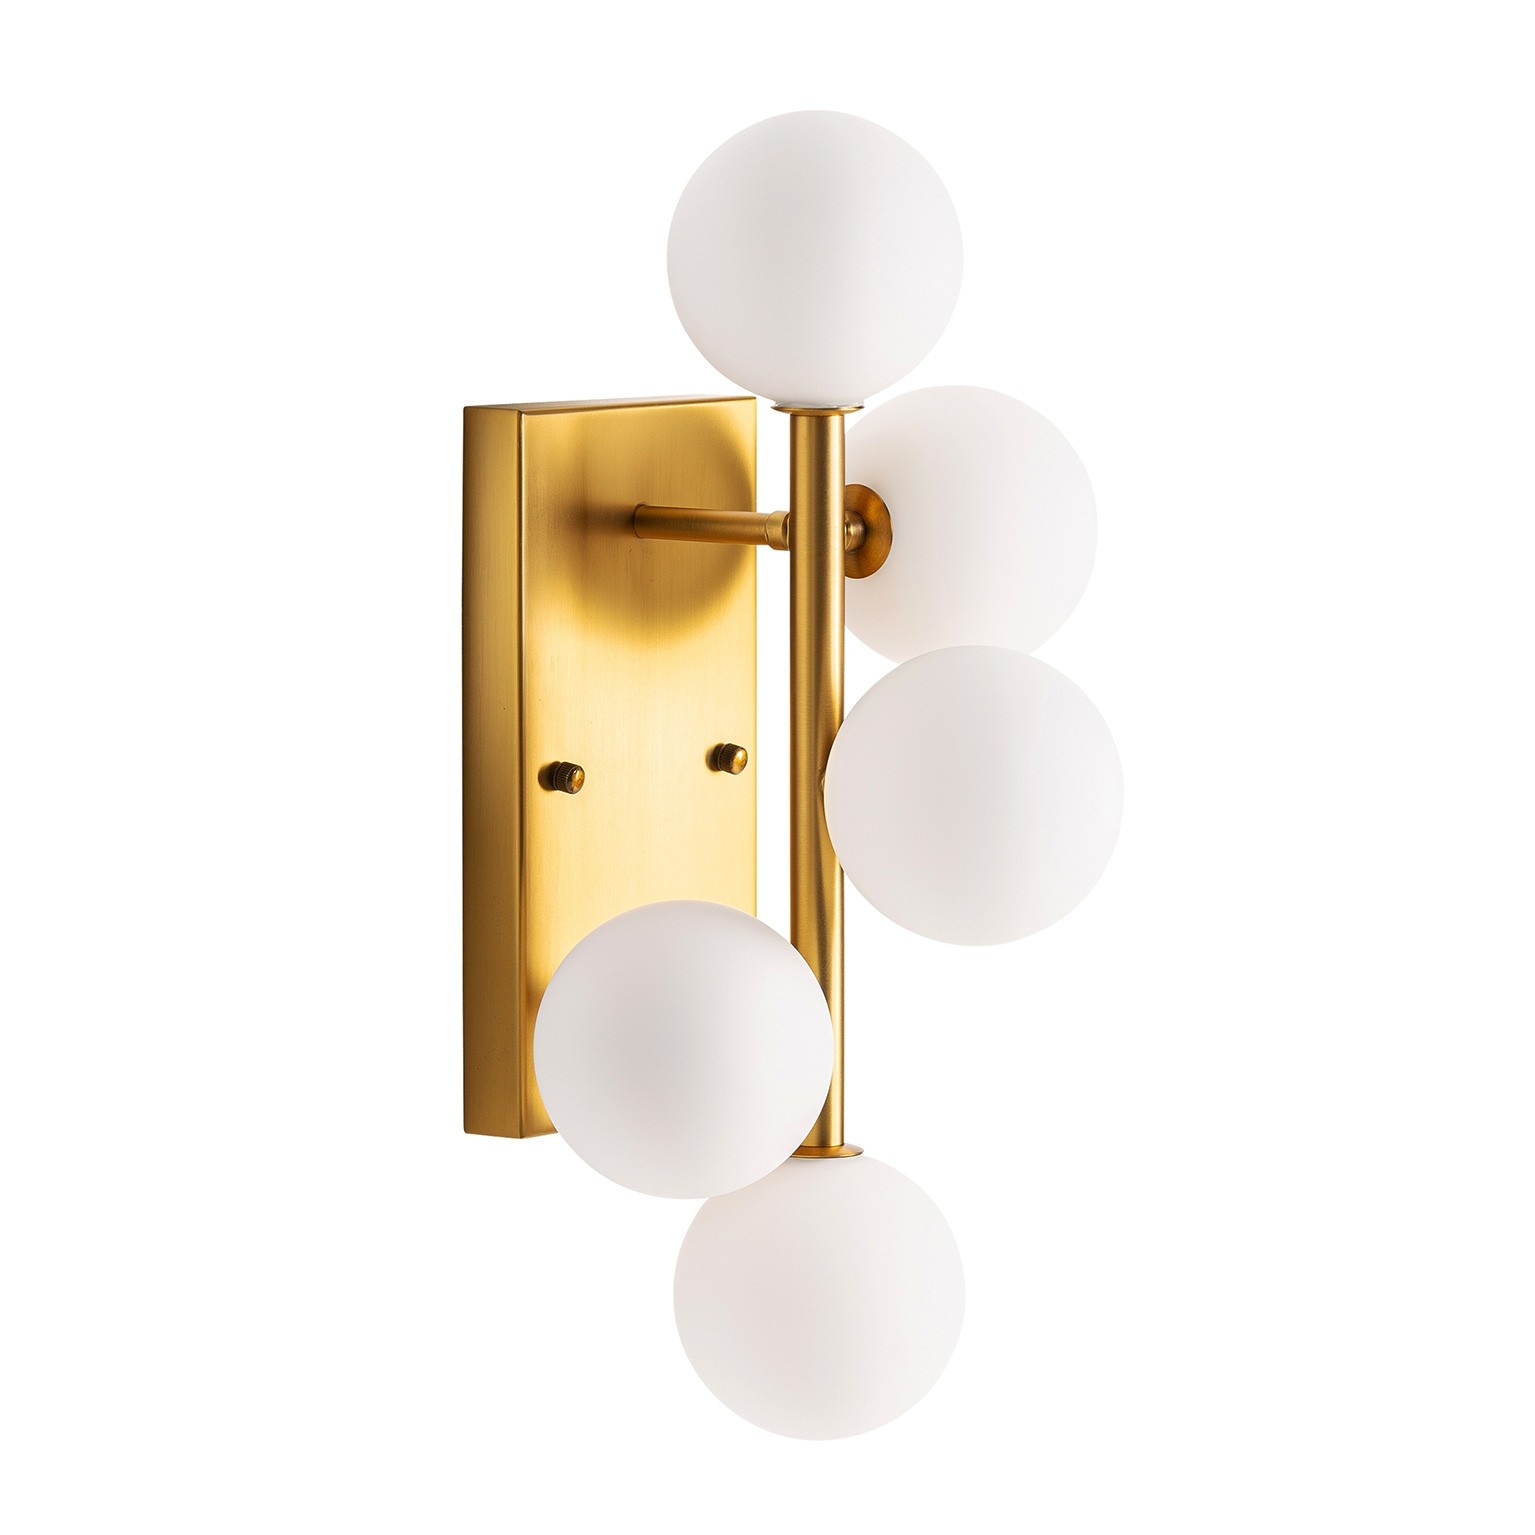 Levně Estila Art-deco nástěnná lampa Esme s kovovou konstrukcí zlaté barvy v art-deco stylu s pěti bílými stínítky 48cm